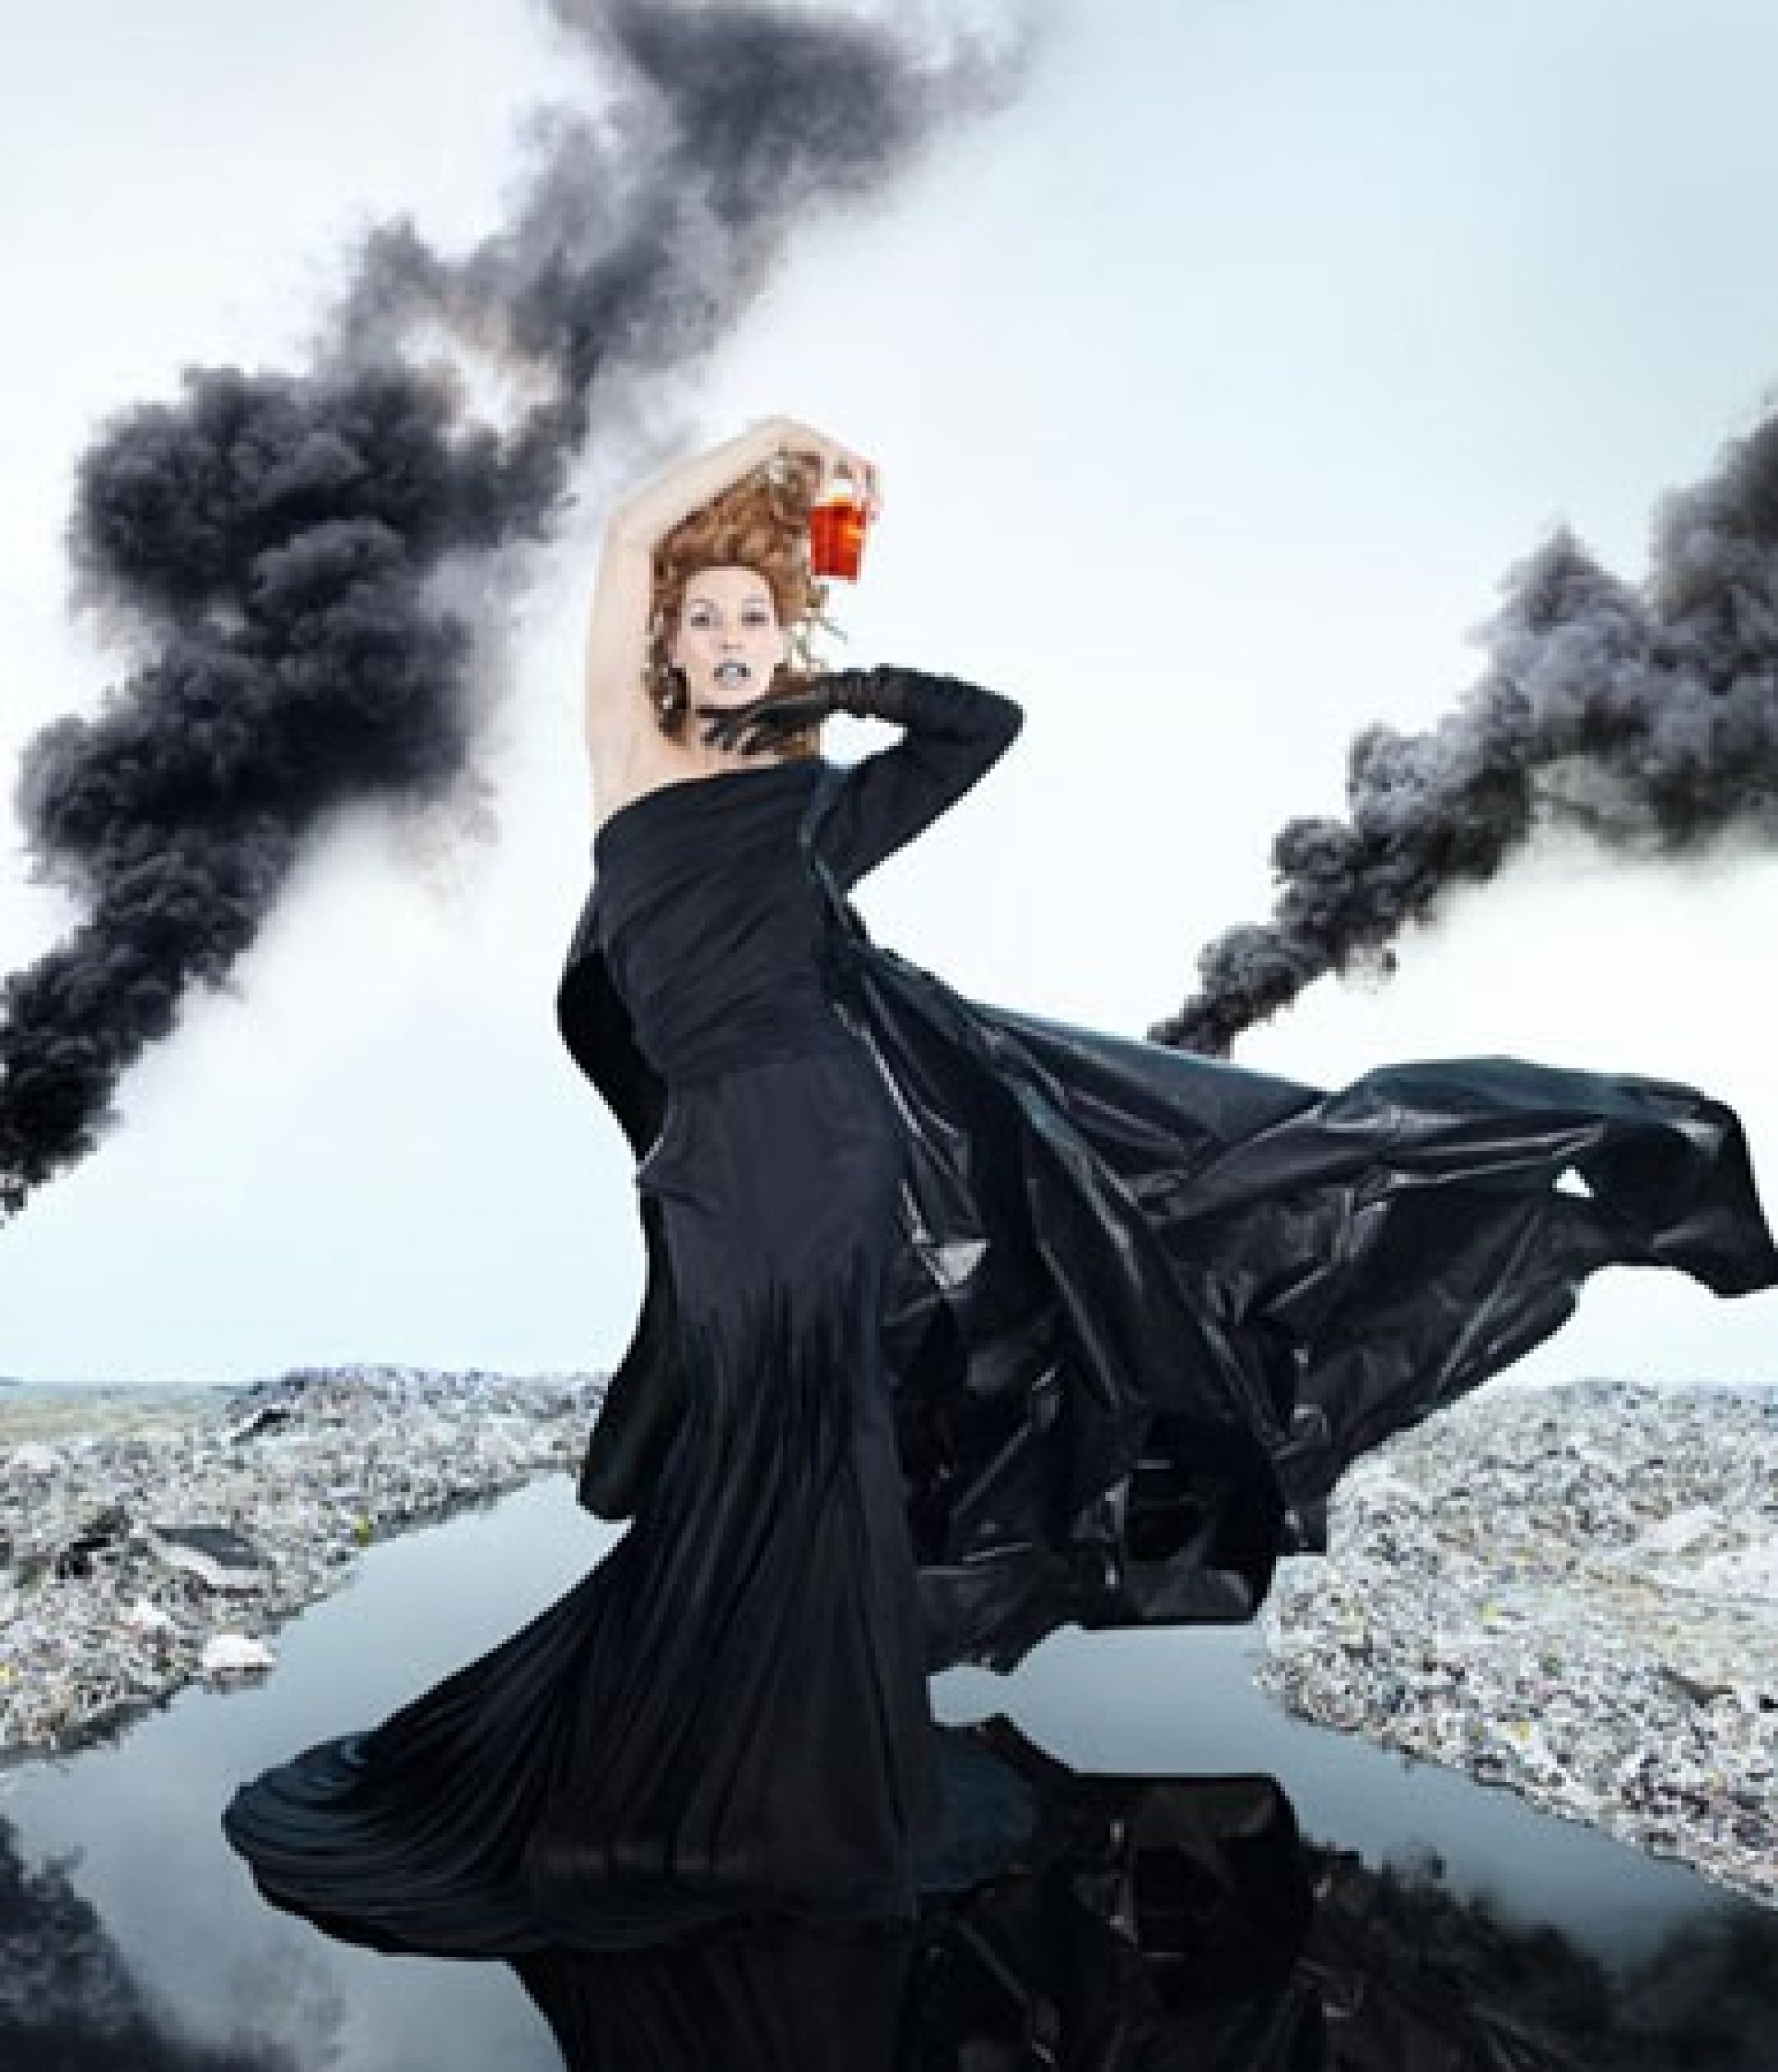 Spectacular Images of 2012 Campari Calendar Featuring Milla Jovovich